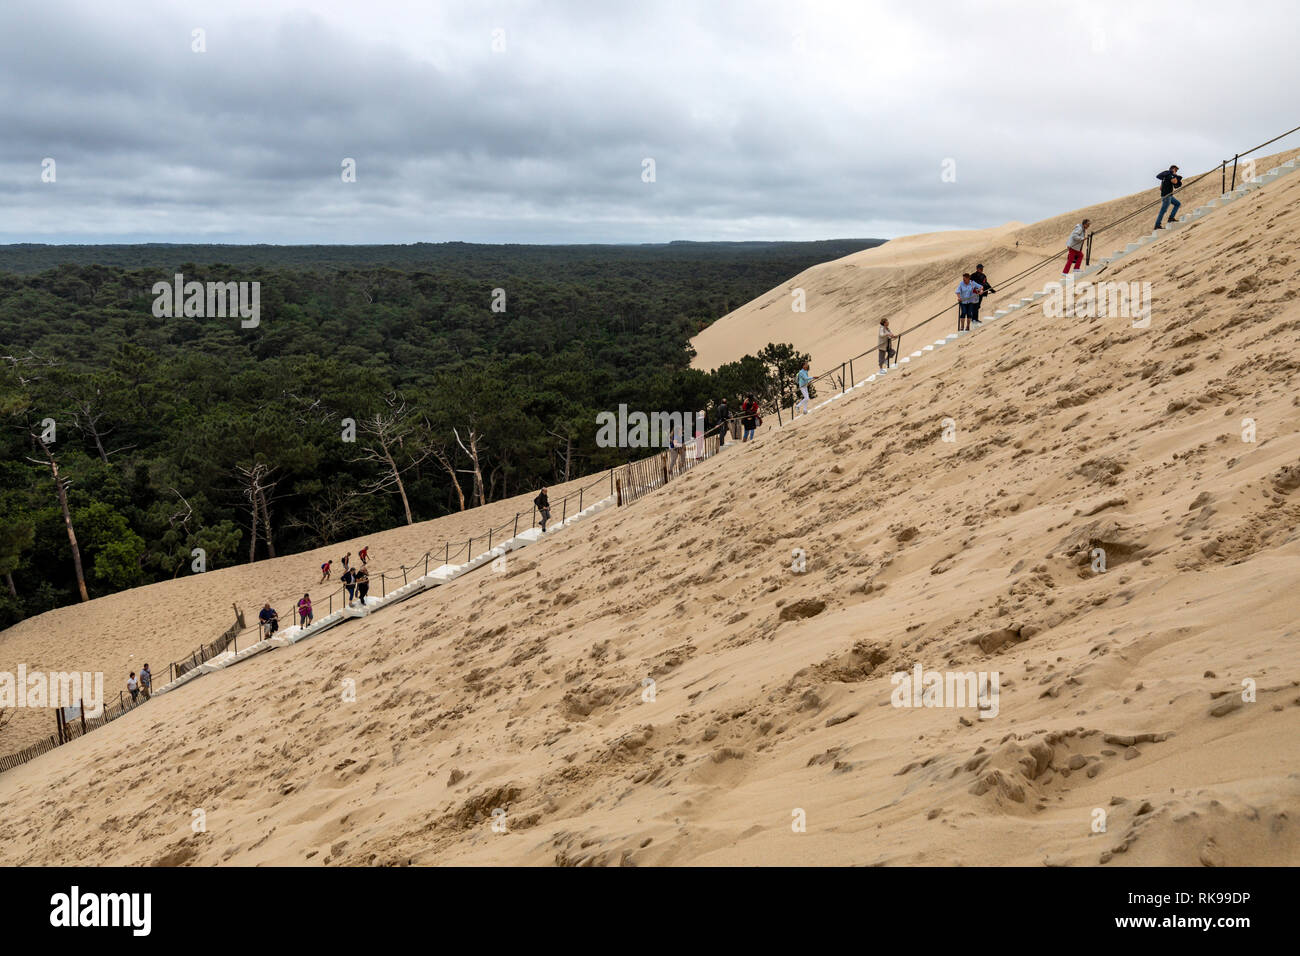 Les touristes l'ascension de la Dune du Pilat La dune de sable la plus haute d'Europe situé à La Teste-de-Buch dans la région de la Baie d'arcachon france, 60 km de Bordea Banque D'Images